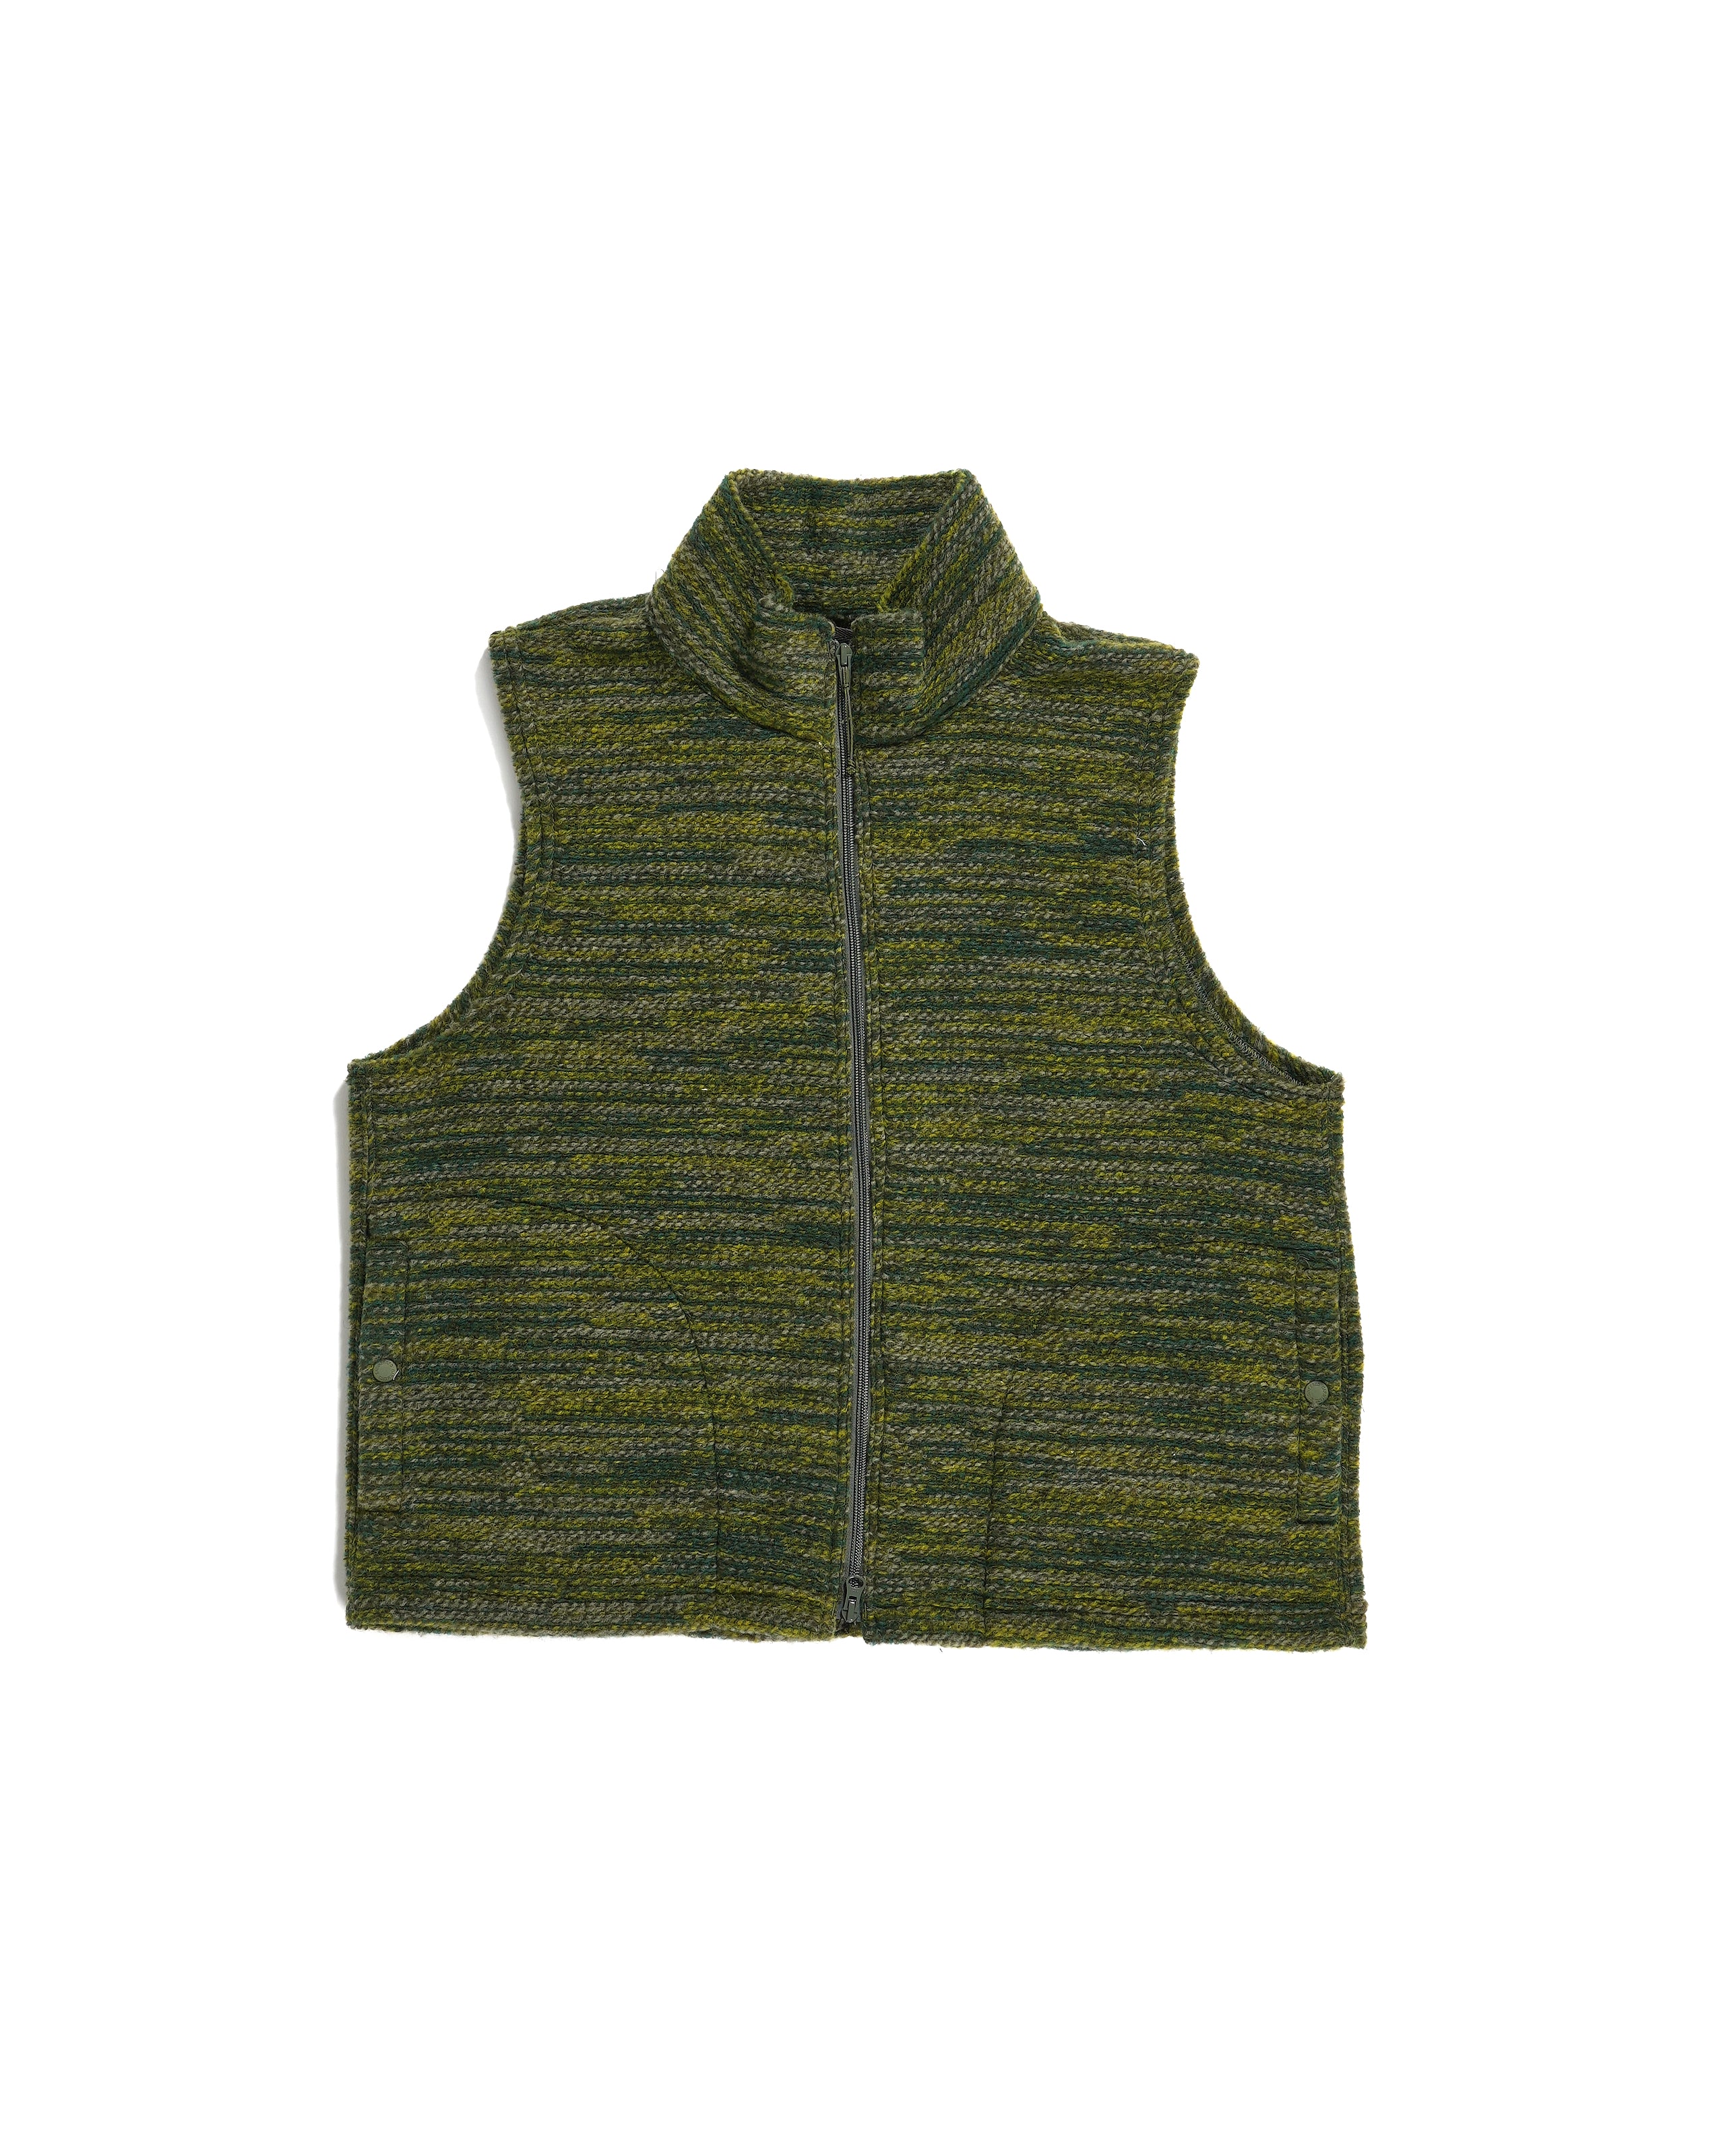 High Mock Knit Vest - Green Poly Wool Melange Knit